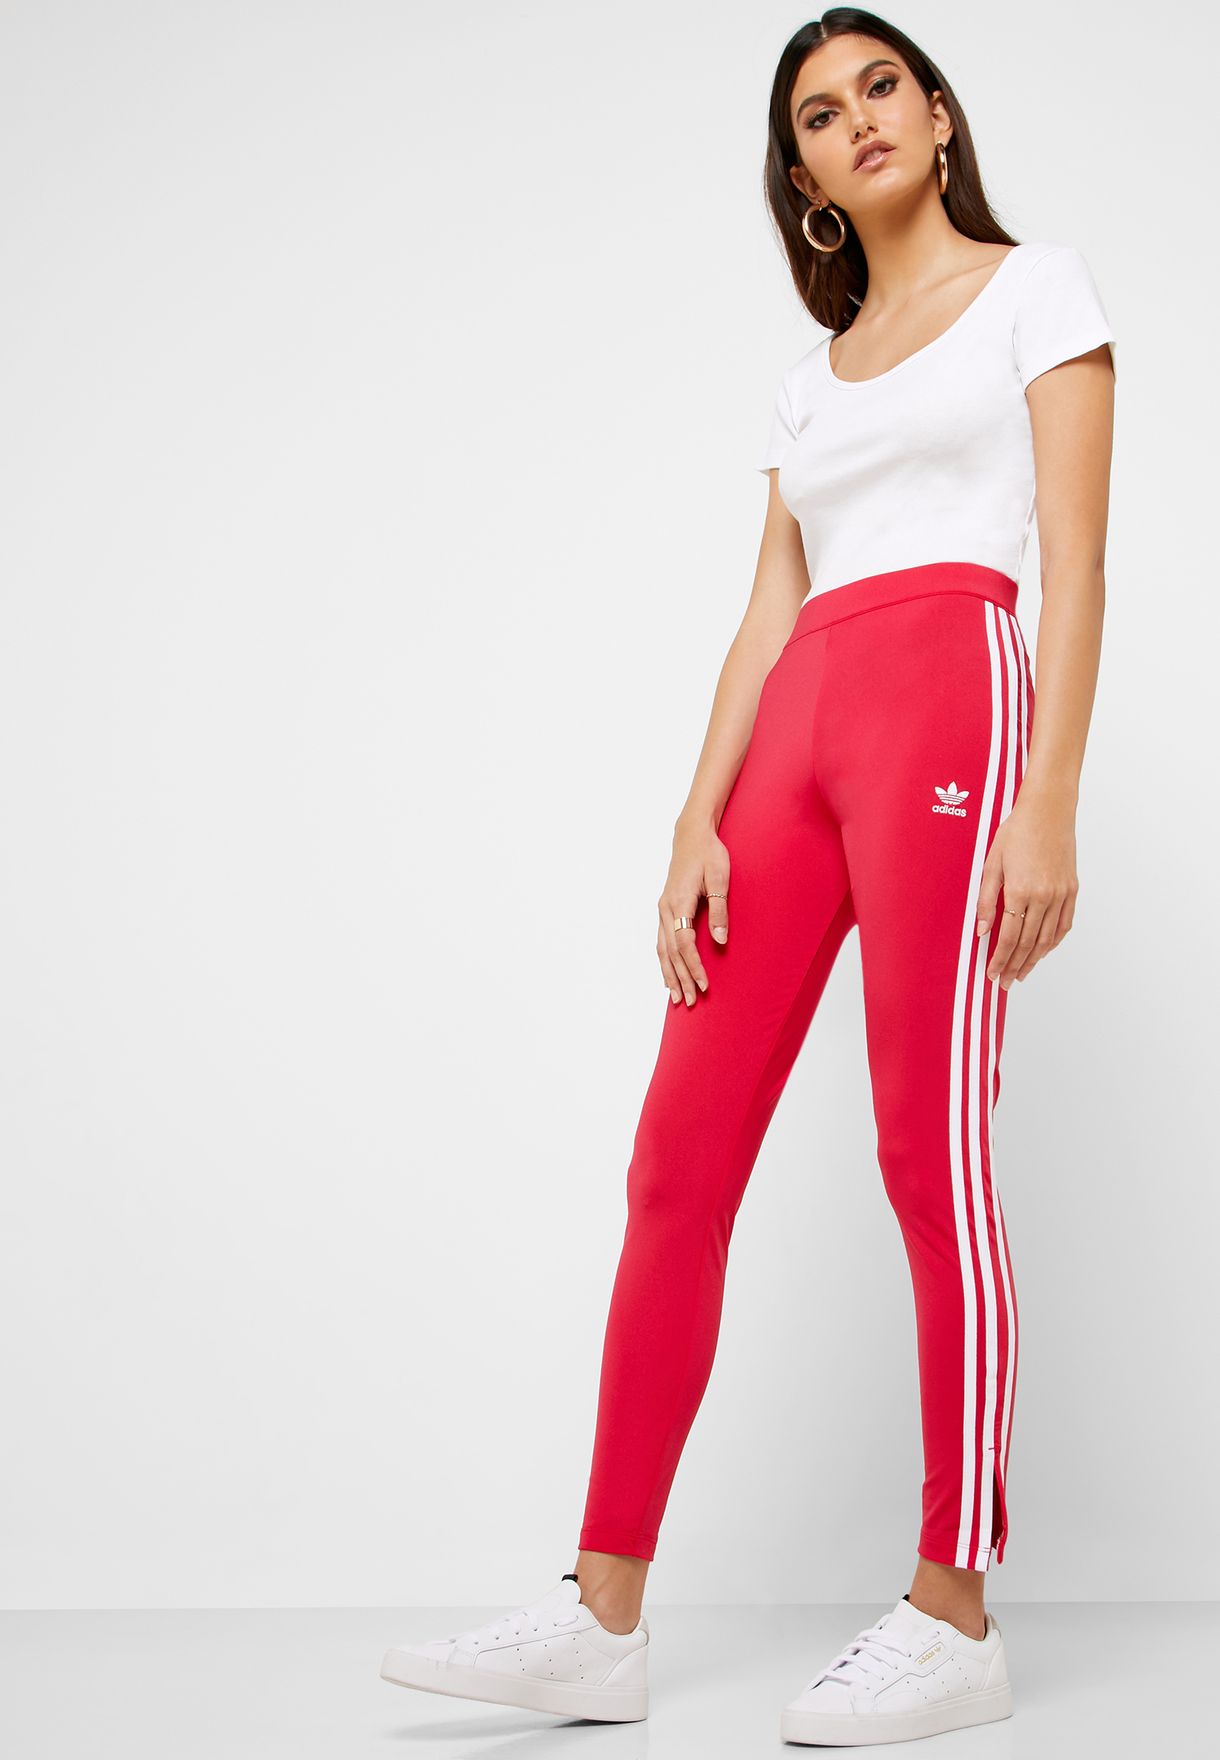 adidas 3 stripe leggings pink